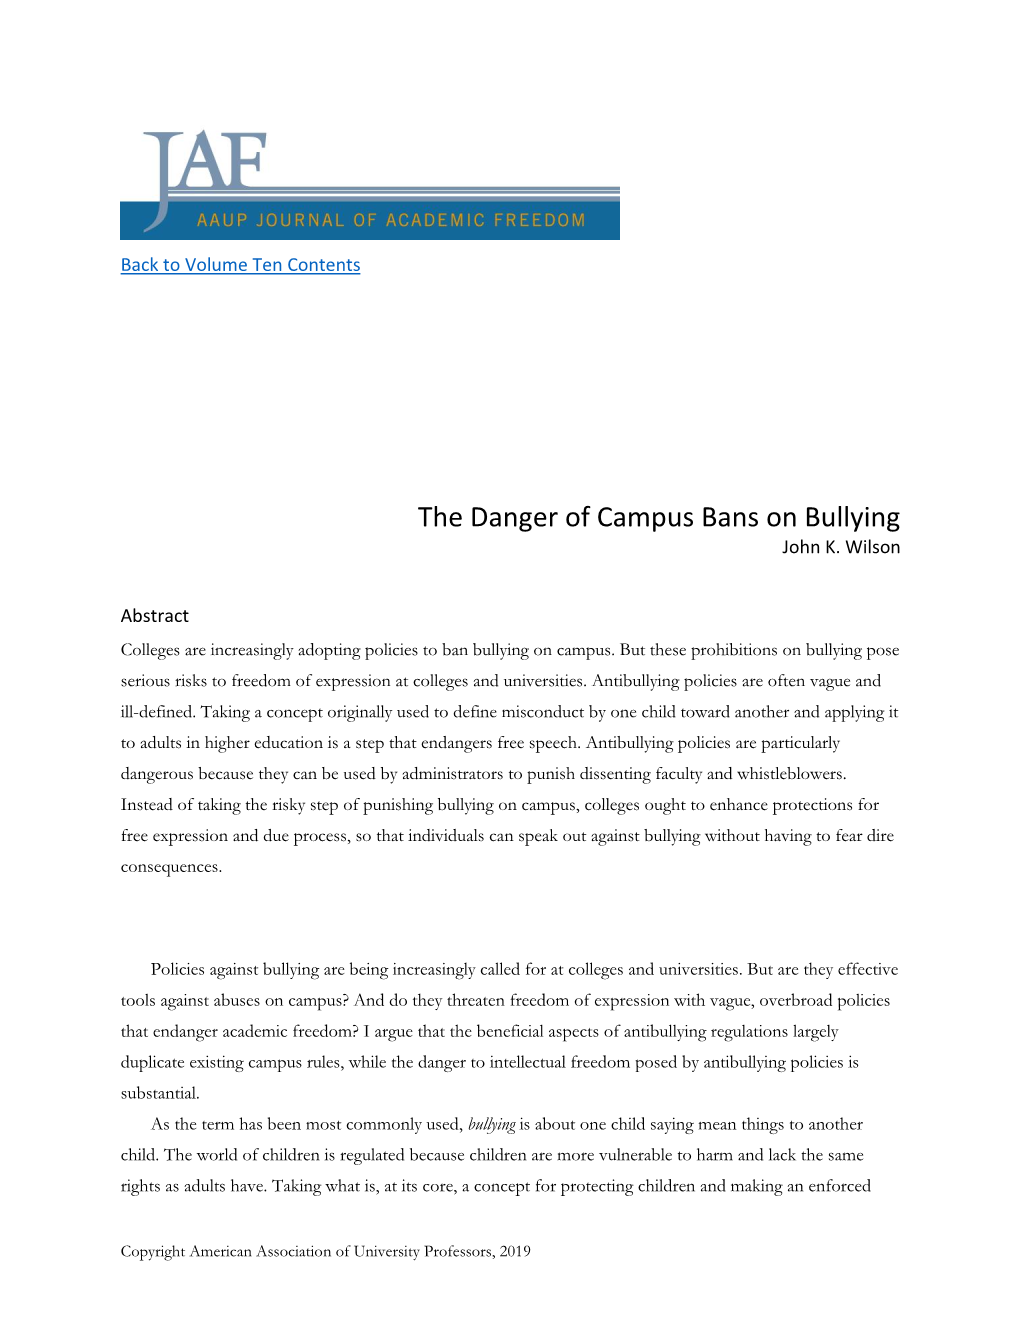 The Danger of Campus Bans on Bullying John K